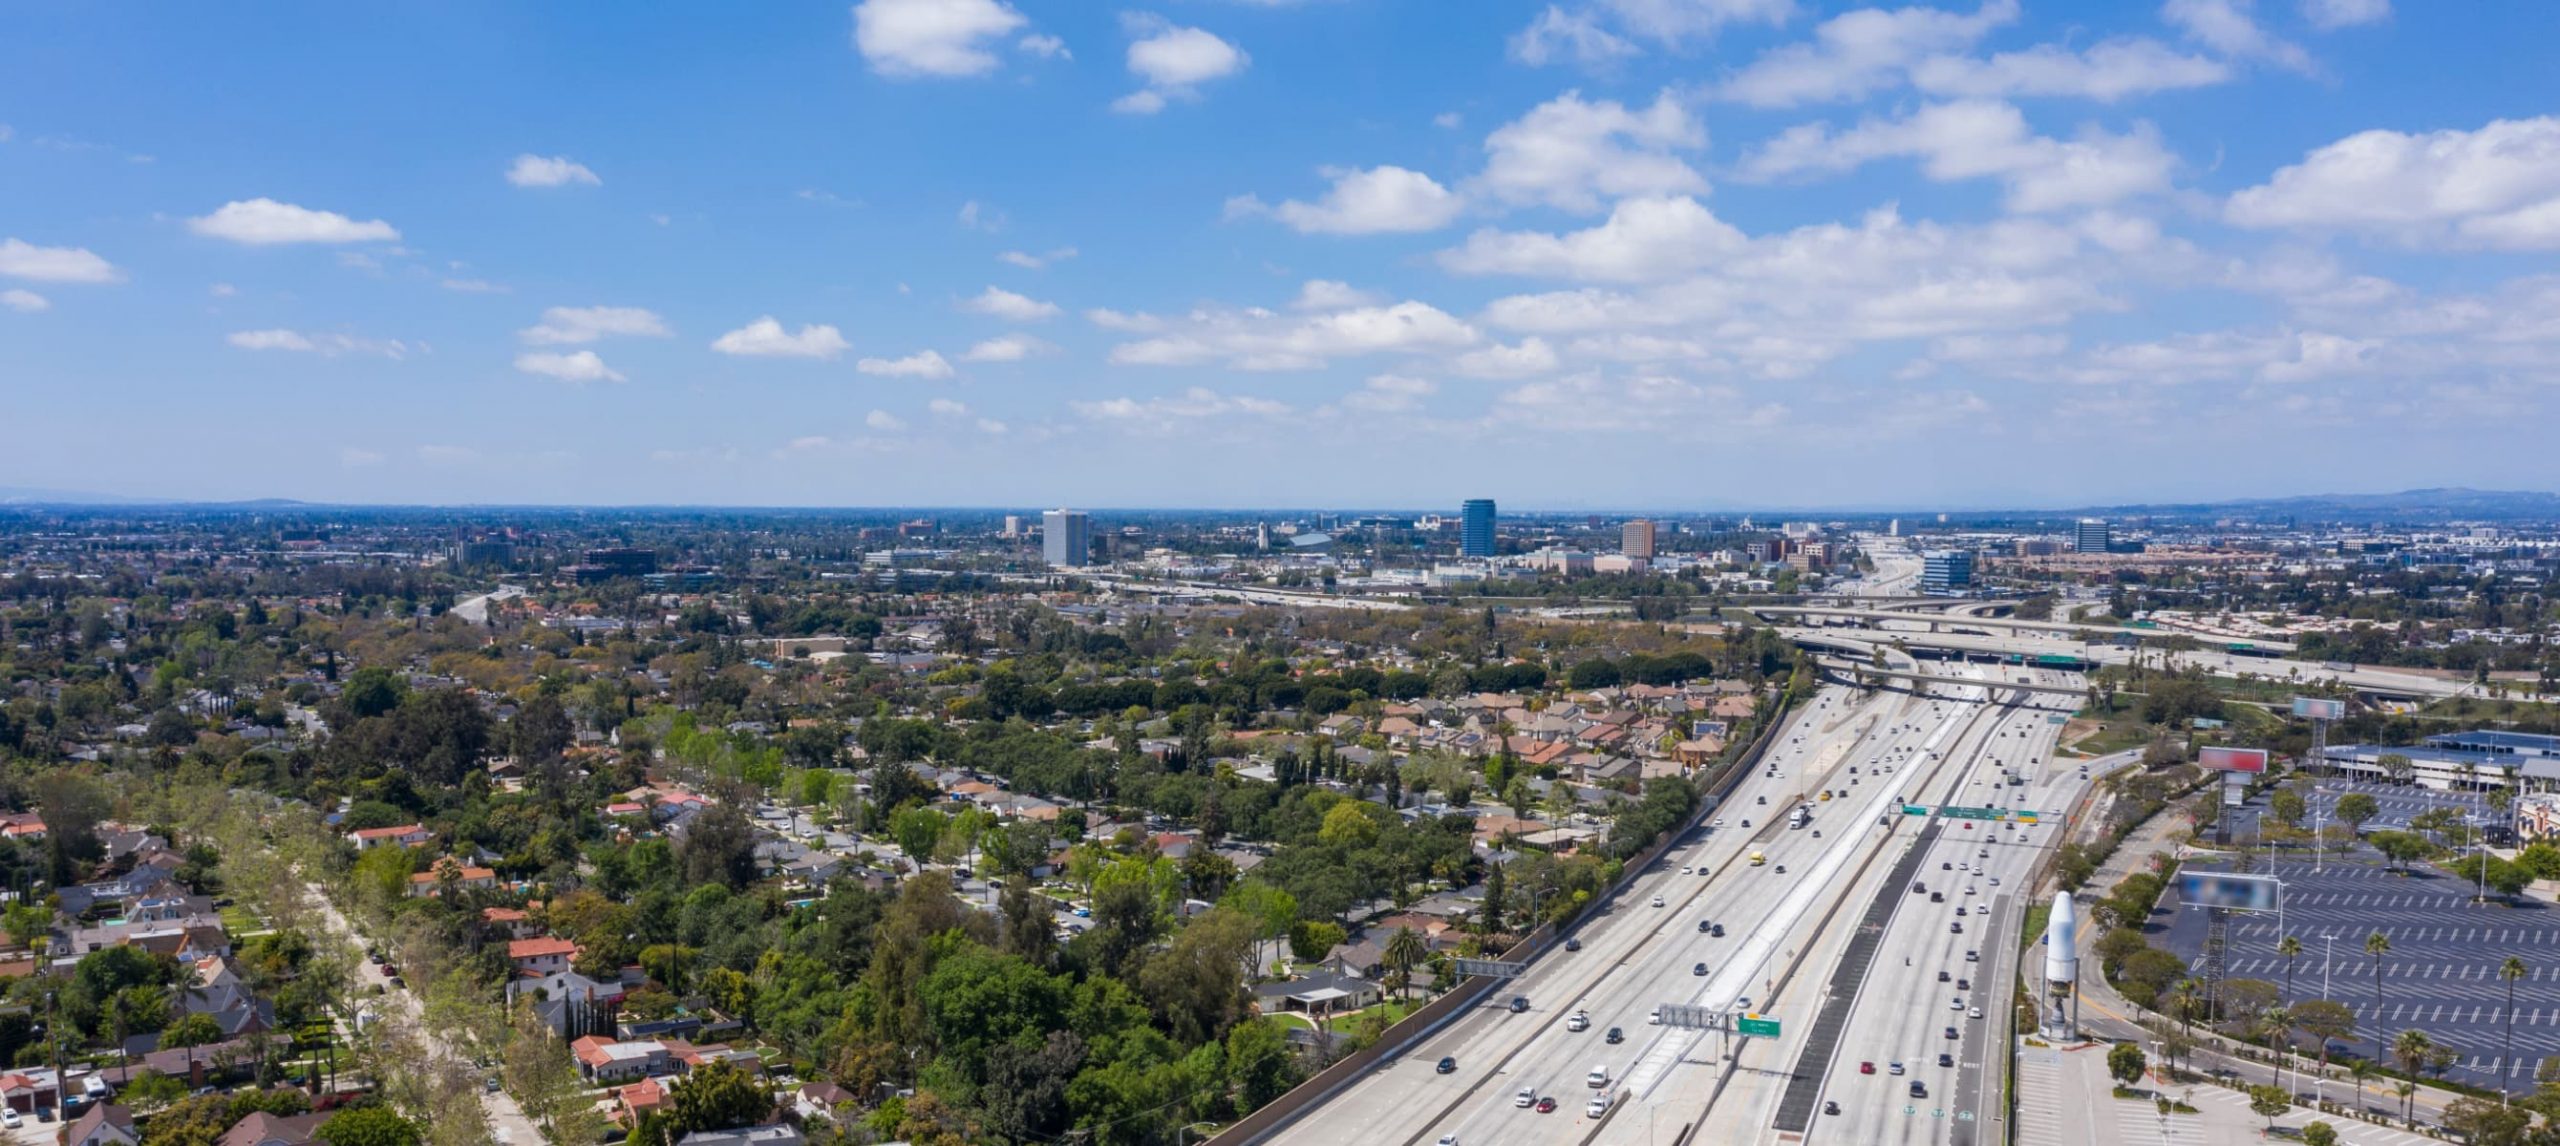 panoramic view of Anaheim, CA